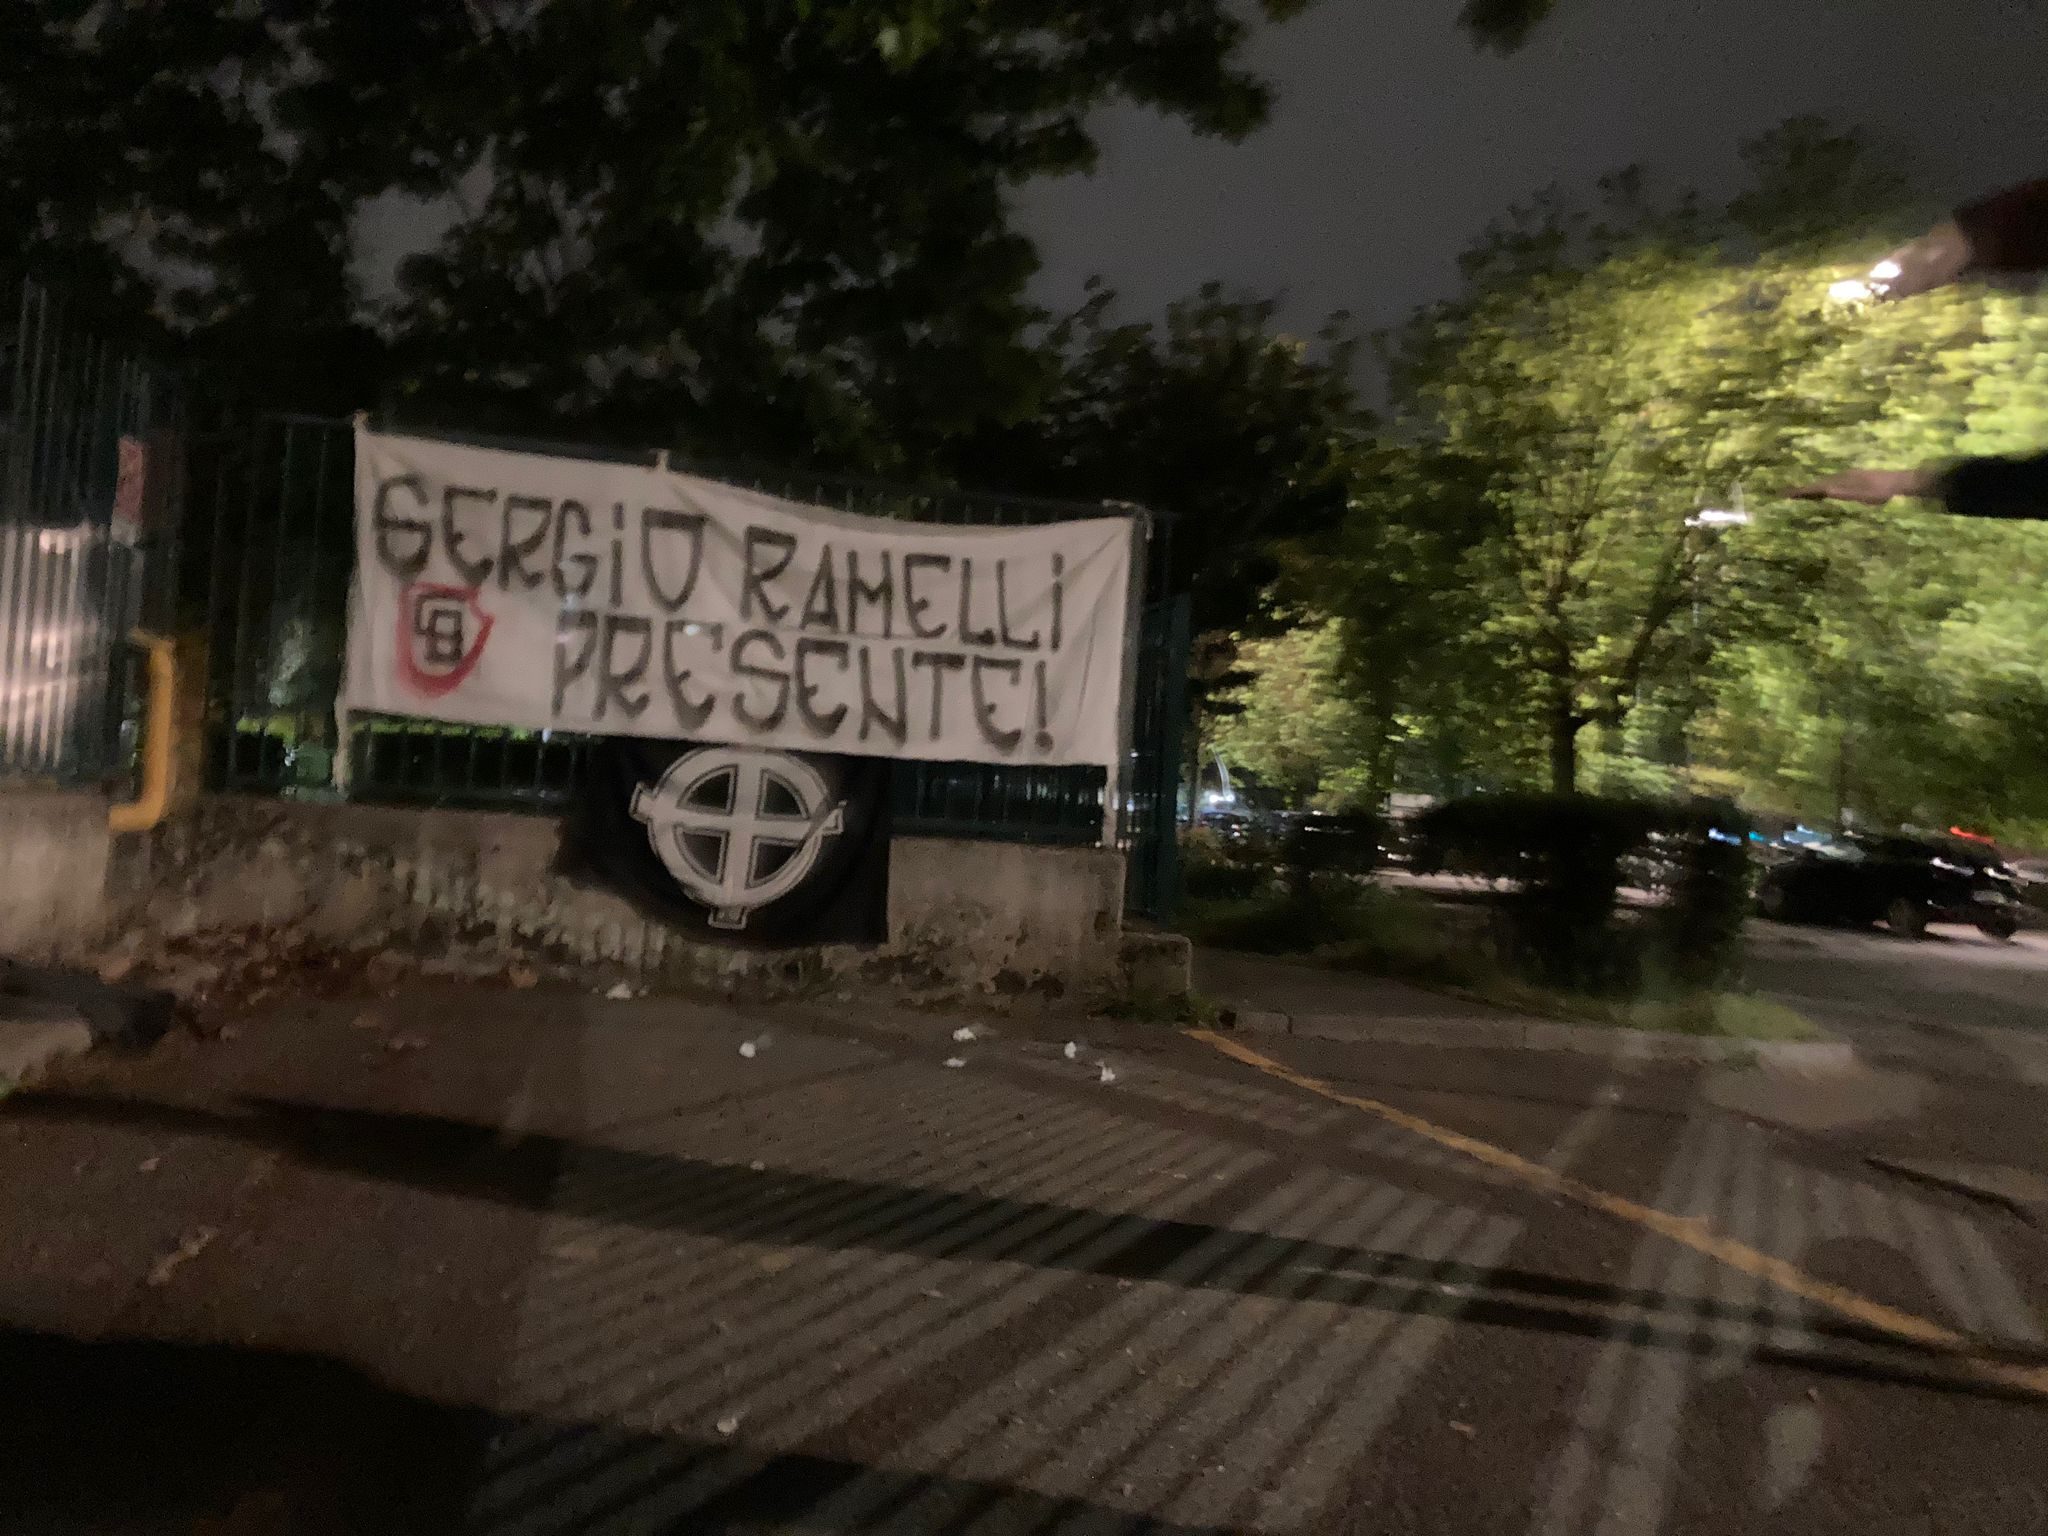 A Saronno il ricordo, con uno striscione, di Sergio Ramelli nell’anniversario della morte